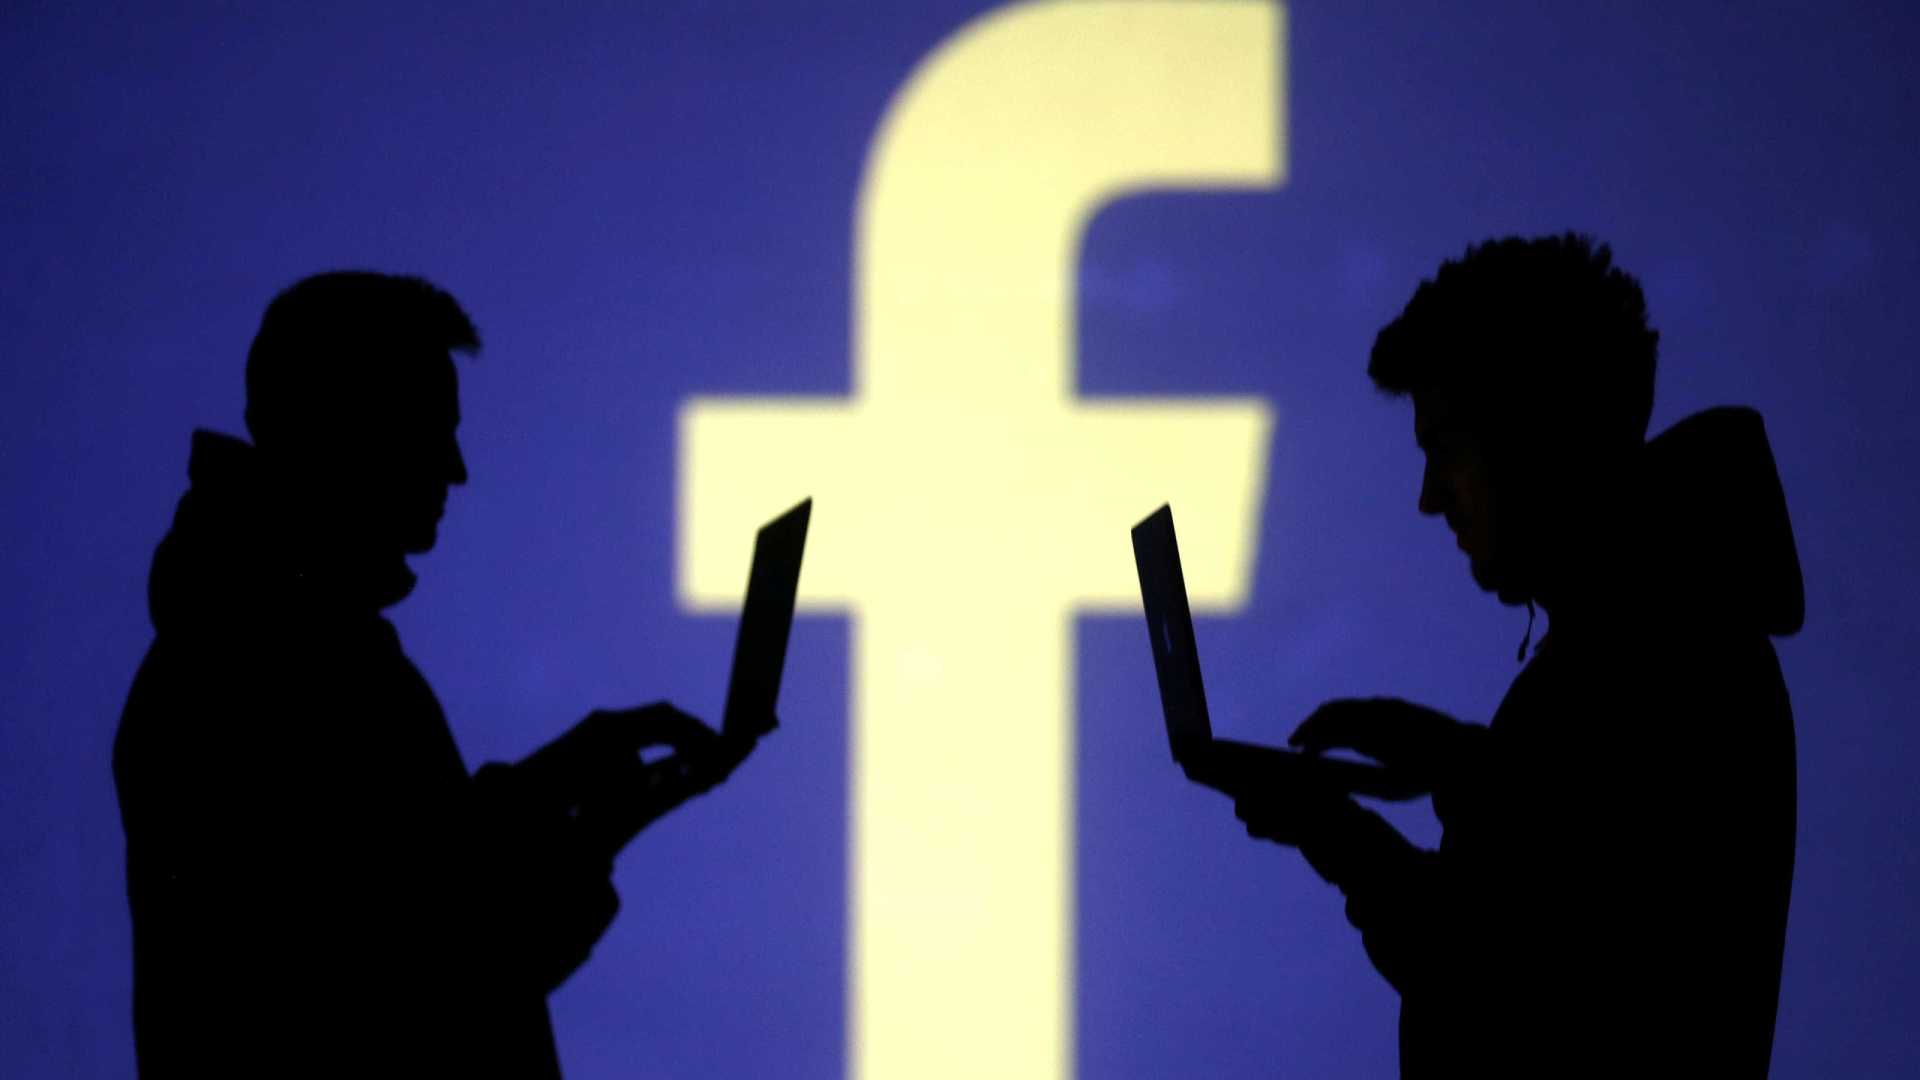 443 mil brasileiros são afetados com uso indevido de dados do Facebook